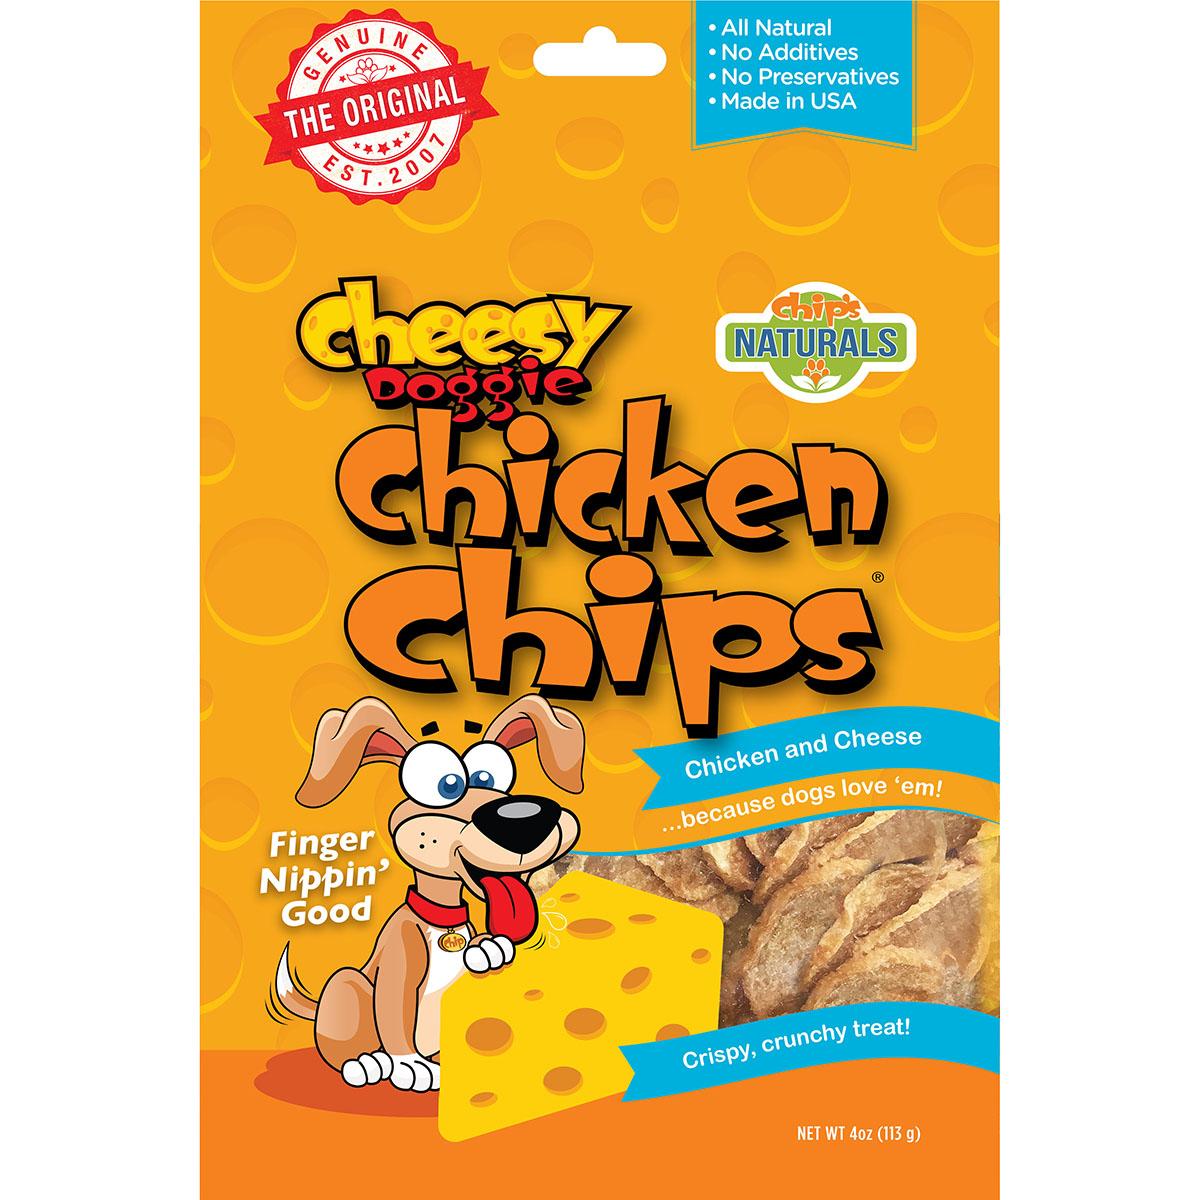 Chip's Naturals Cheesy Doggie Chicken Chips Dog Treats